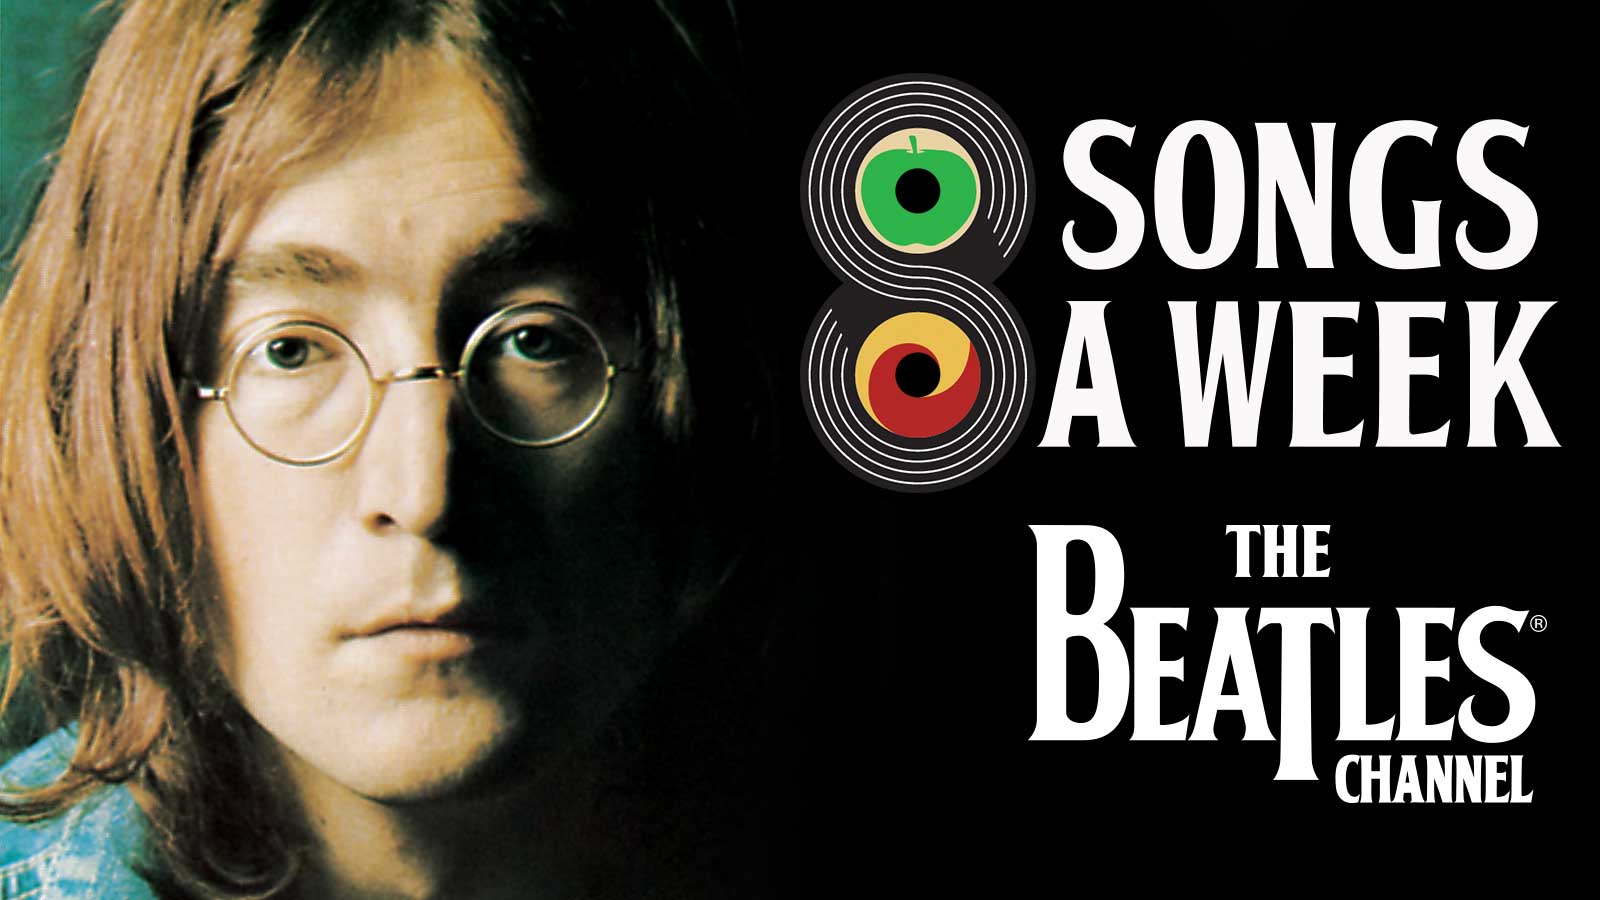 John Lennon 8 Songs a Week